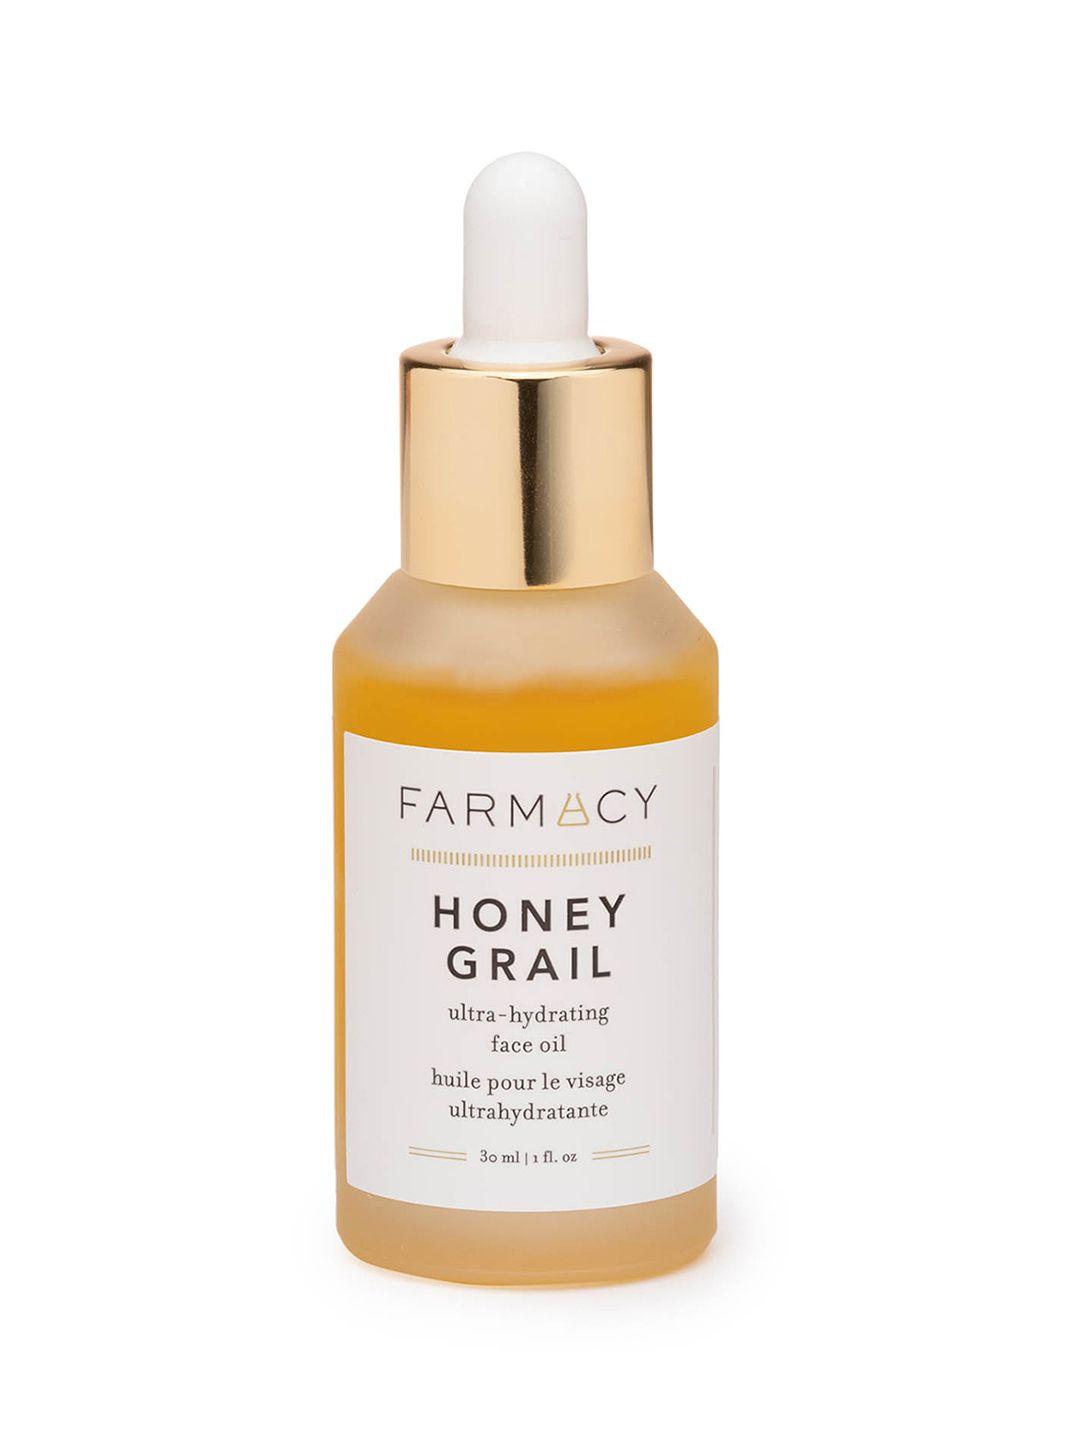 farmacy beauty honey grail ultra-hydrating face oil with sea buckthorn oil - 30ml